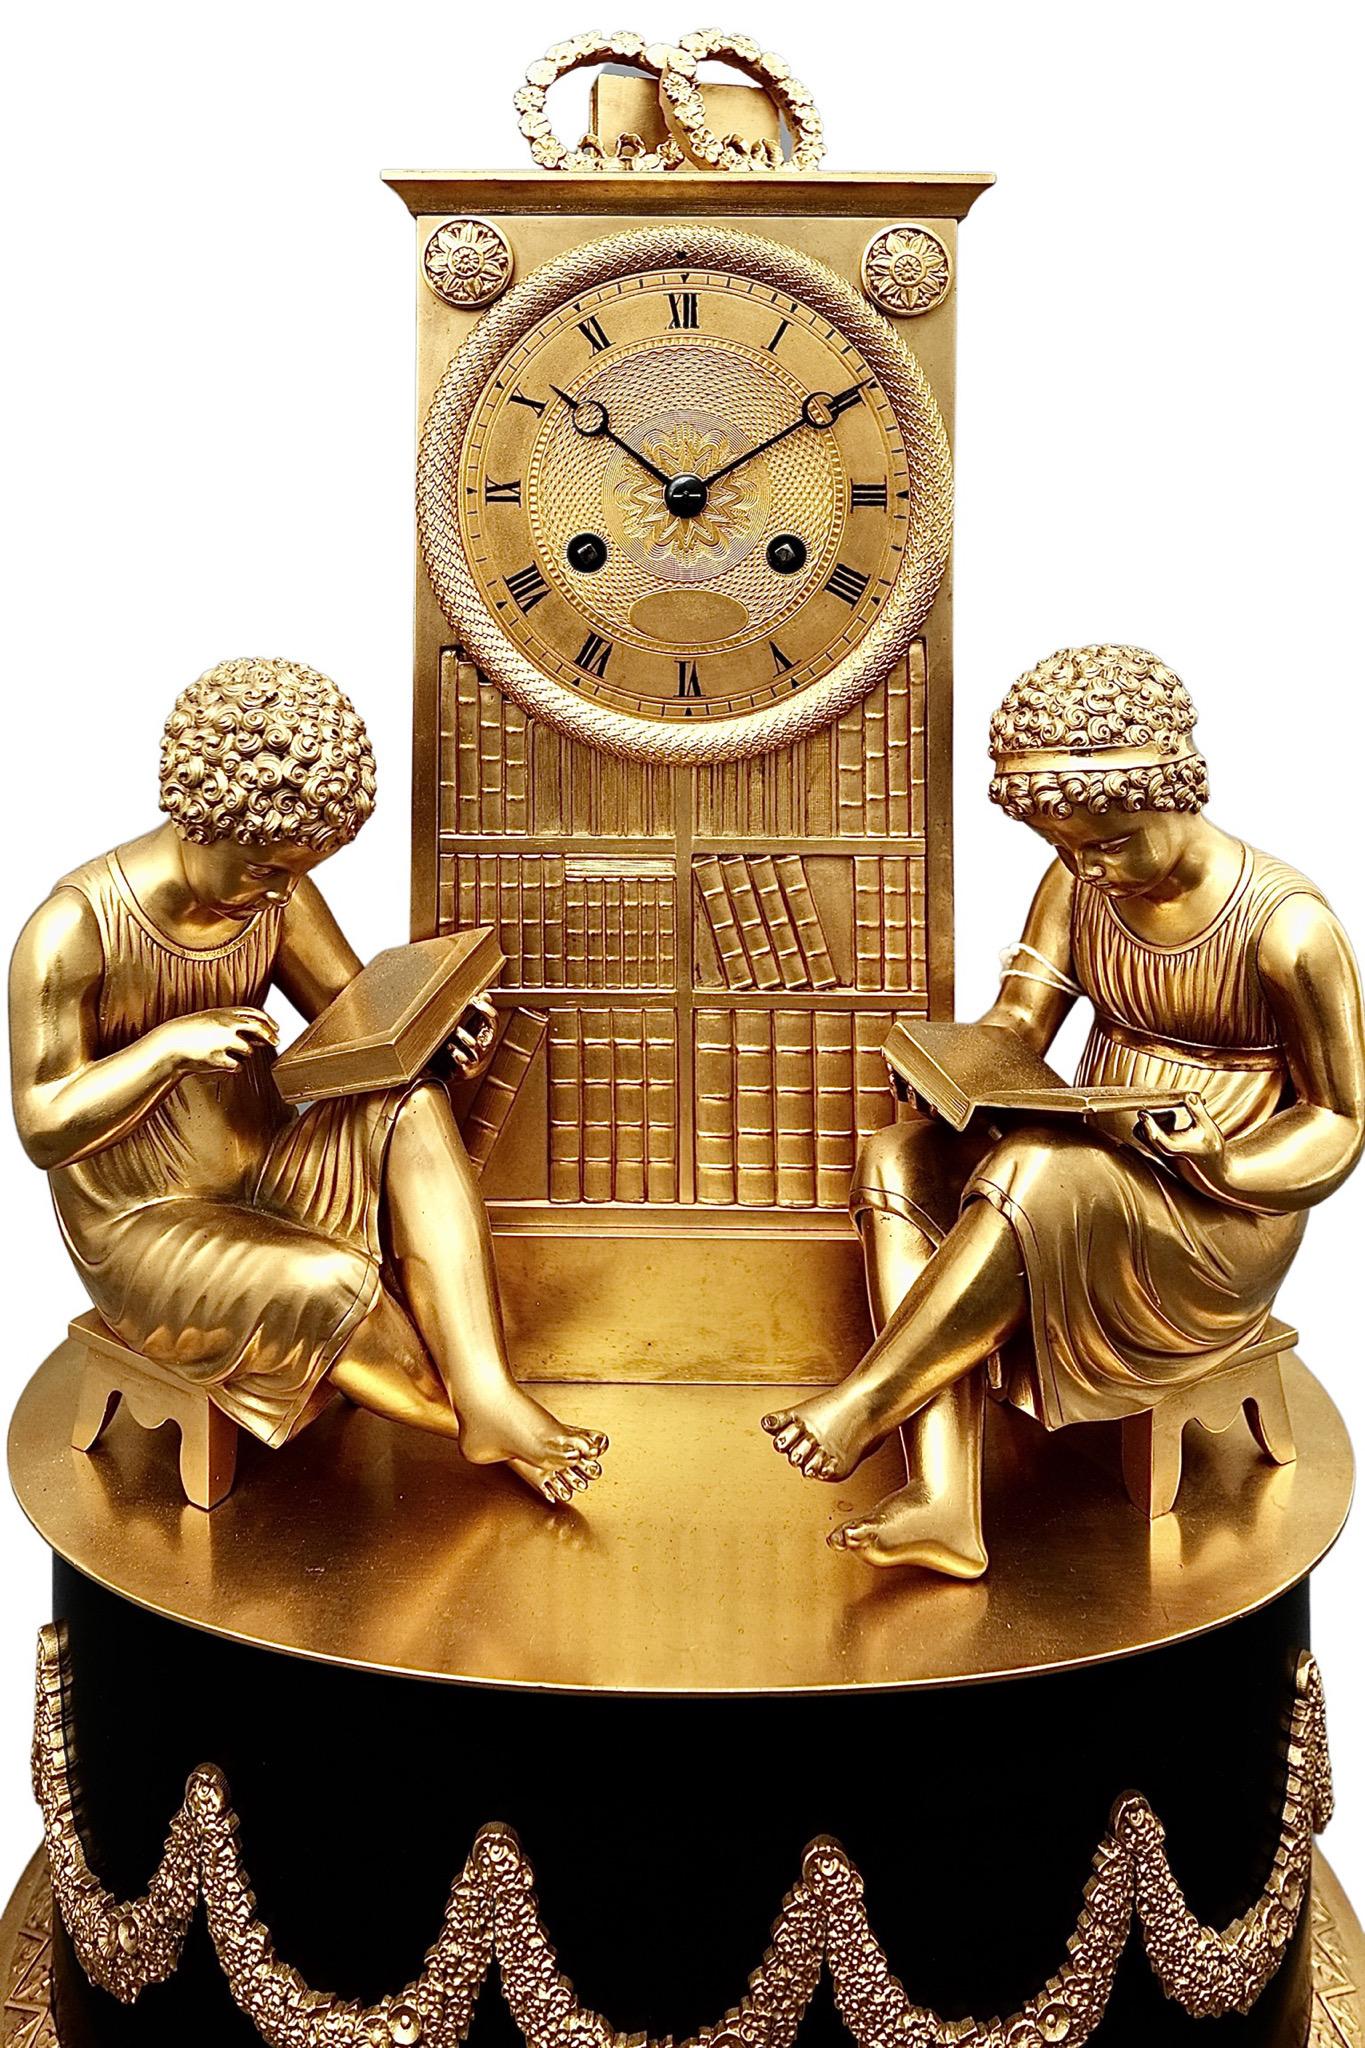 Une fascinante horloge de cheminée ancienne en bronze doré de style Empire français

Une horloge fascinante en forme de bibliothèque, avec deux enfants assis de chaque côté. Élevé sur un socle à pieds en bronze doré, le cadran romain est en bronze